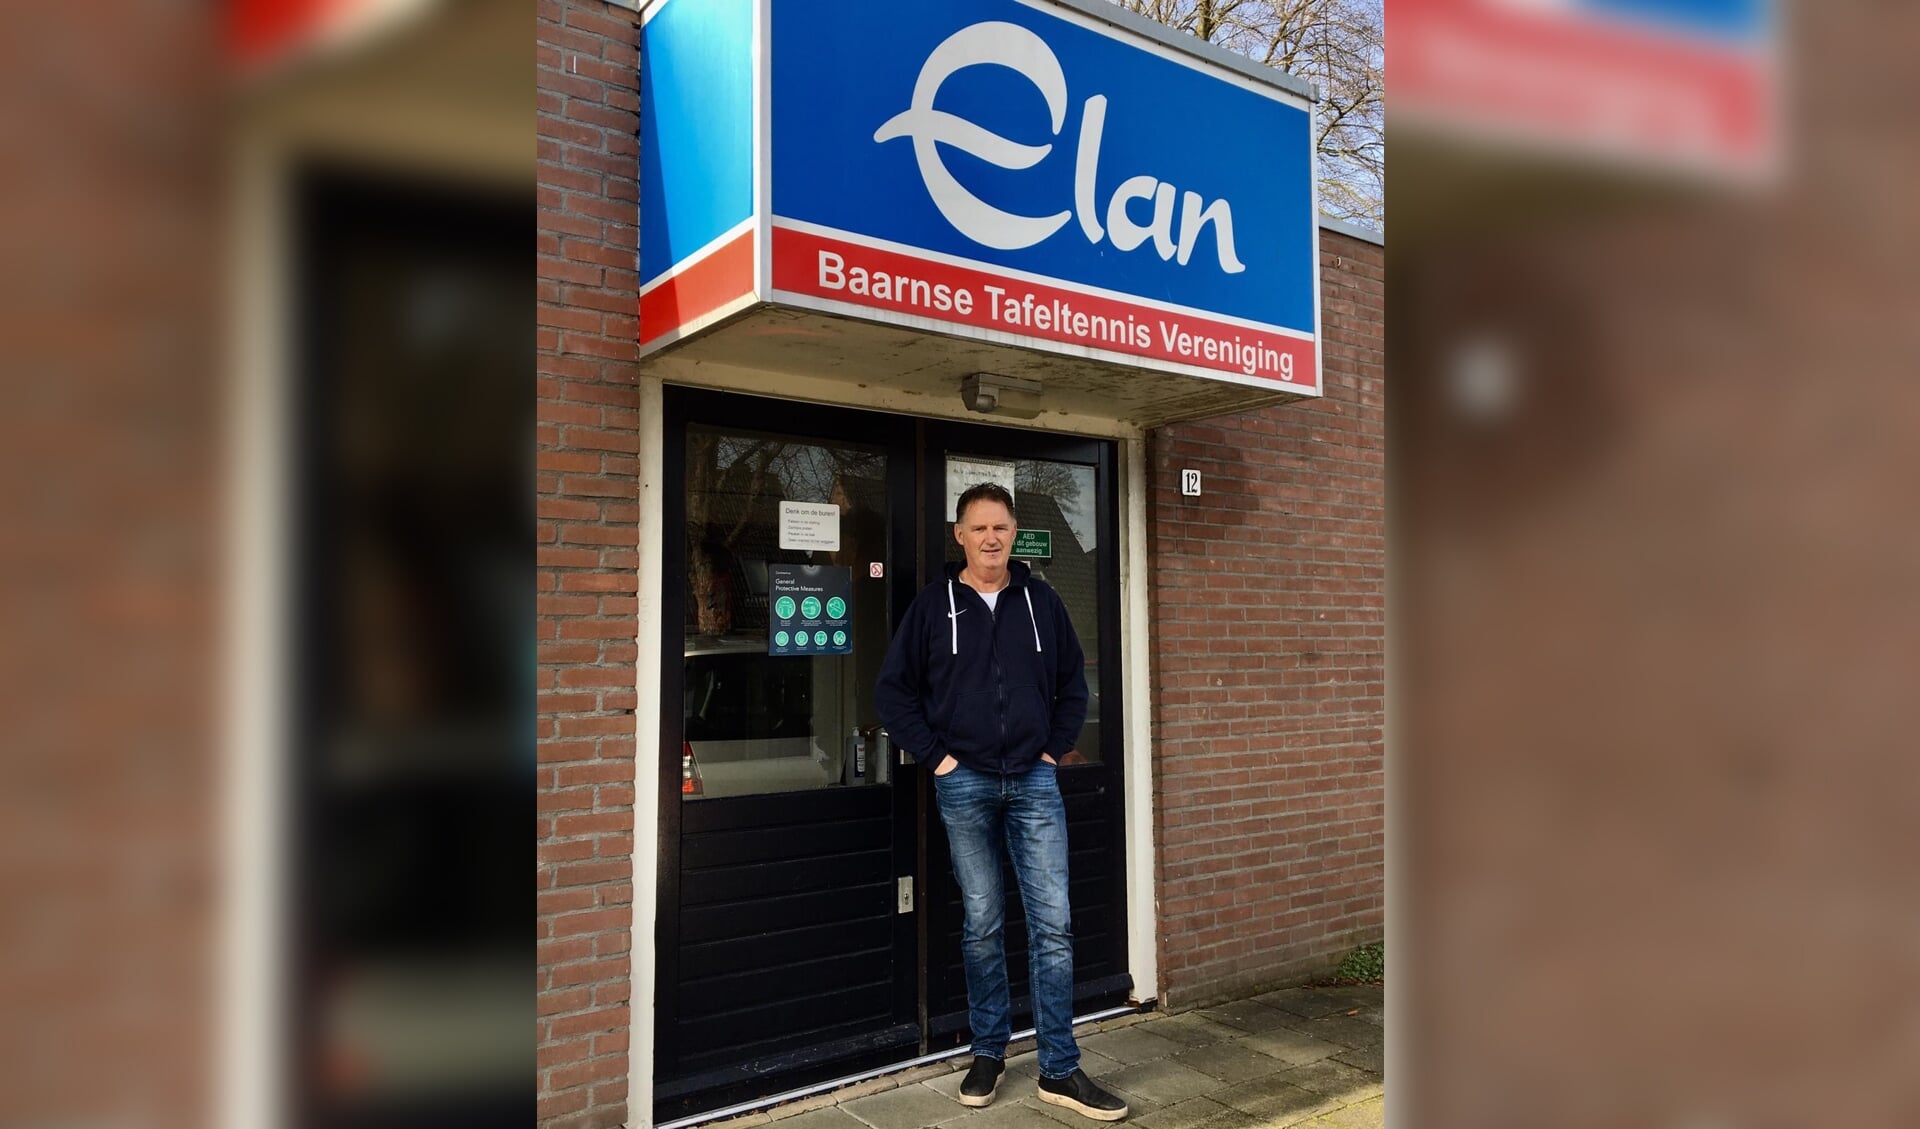 Eddie Uittenbogaard zit al vele jaren in het bestuur van tafeltennisvereniging Elan. 